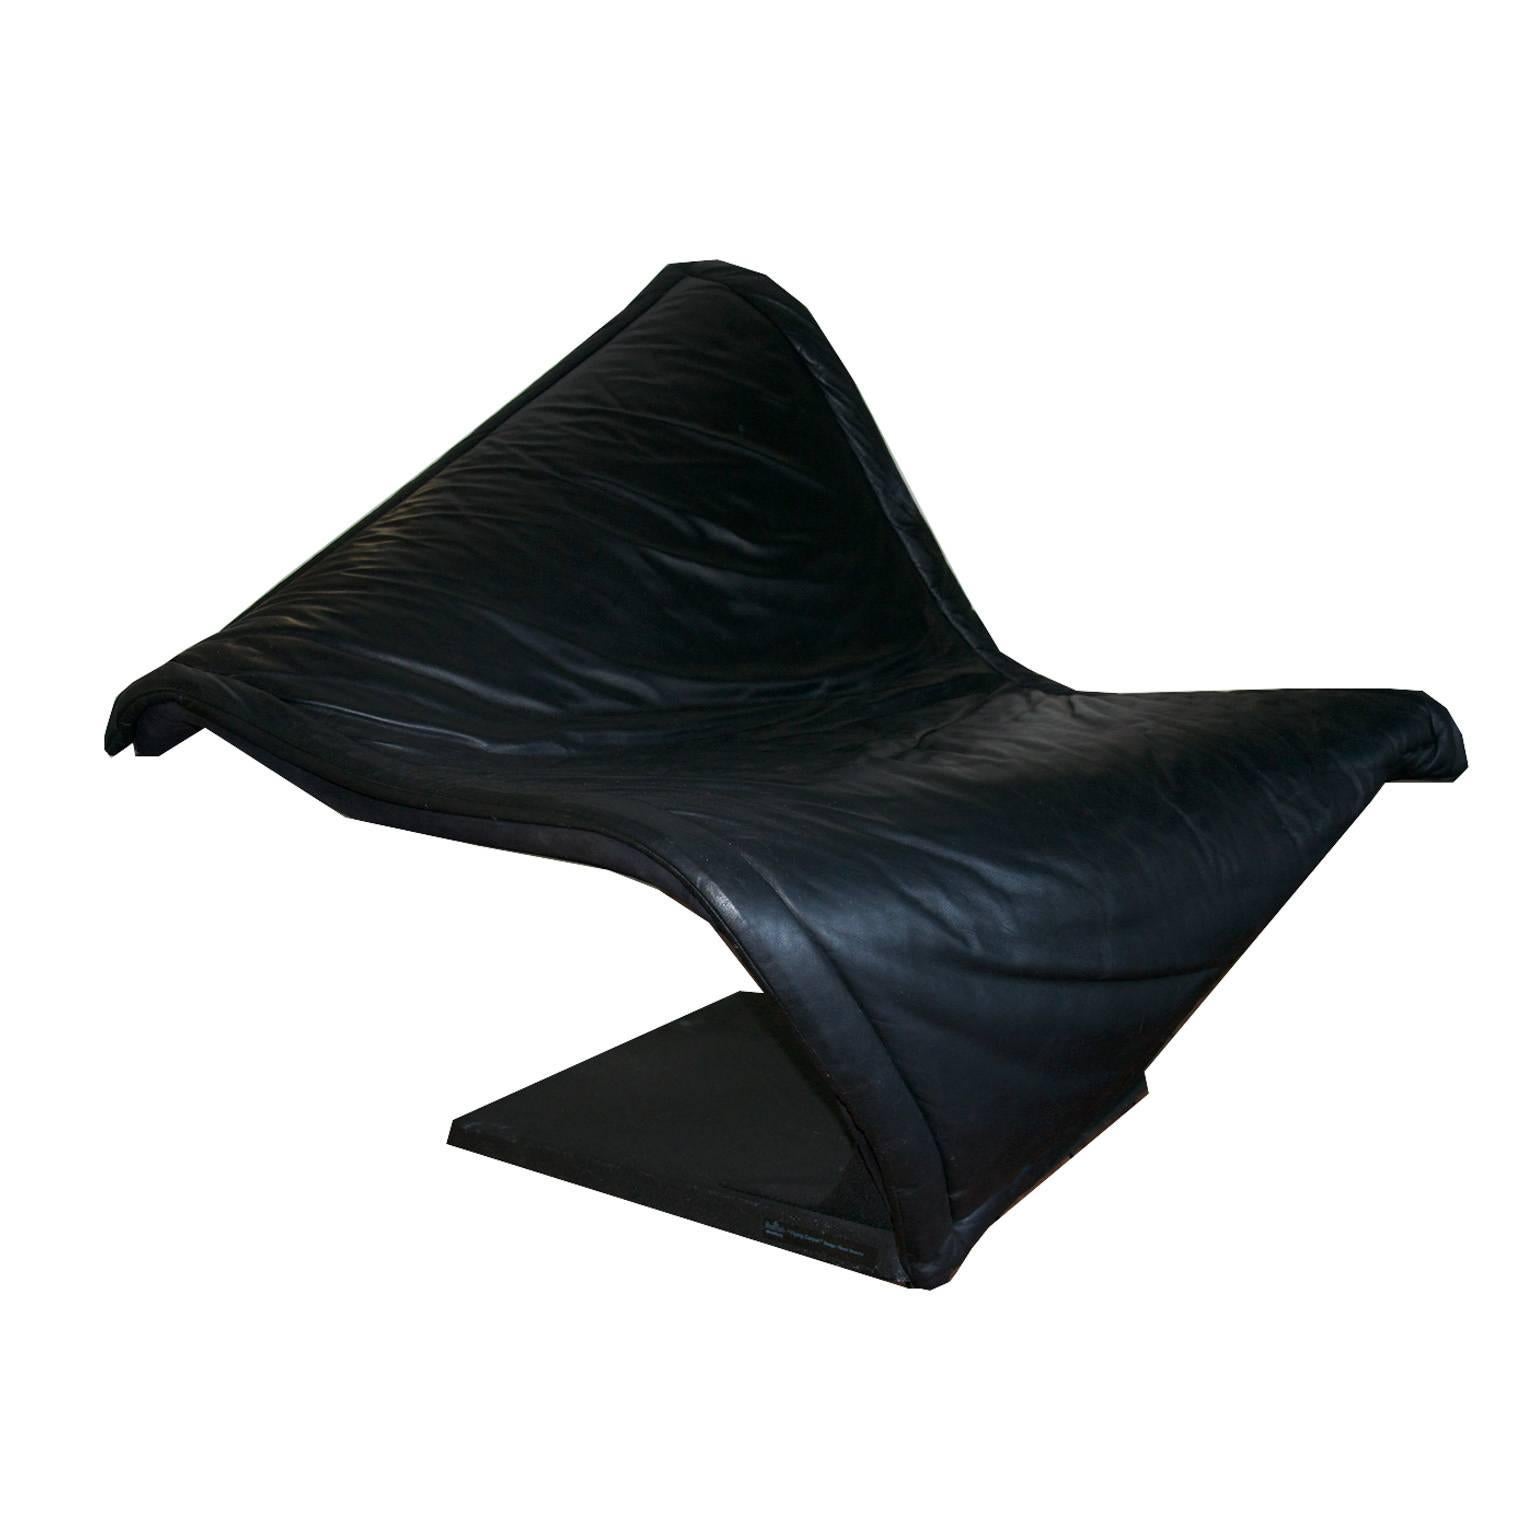 Simon Desanta Lounge Chair “Flying Carpet” for Rosenthal For Sale